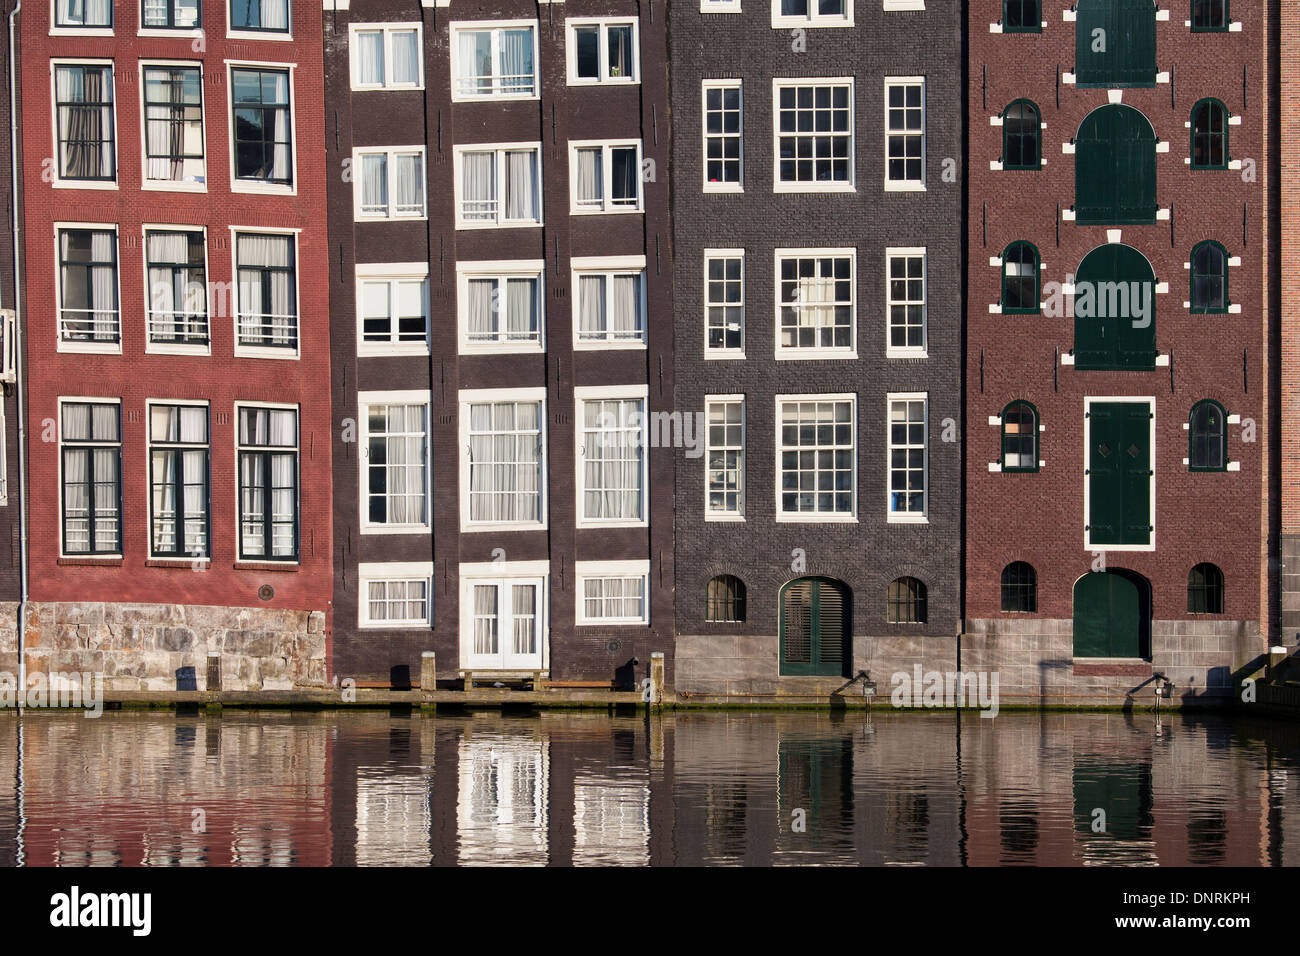 Traditionelle, beherbergt altholländischen Stil Reihenhaus am Kanal in Amsterdam, Niederlande. Stockfoto